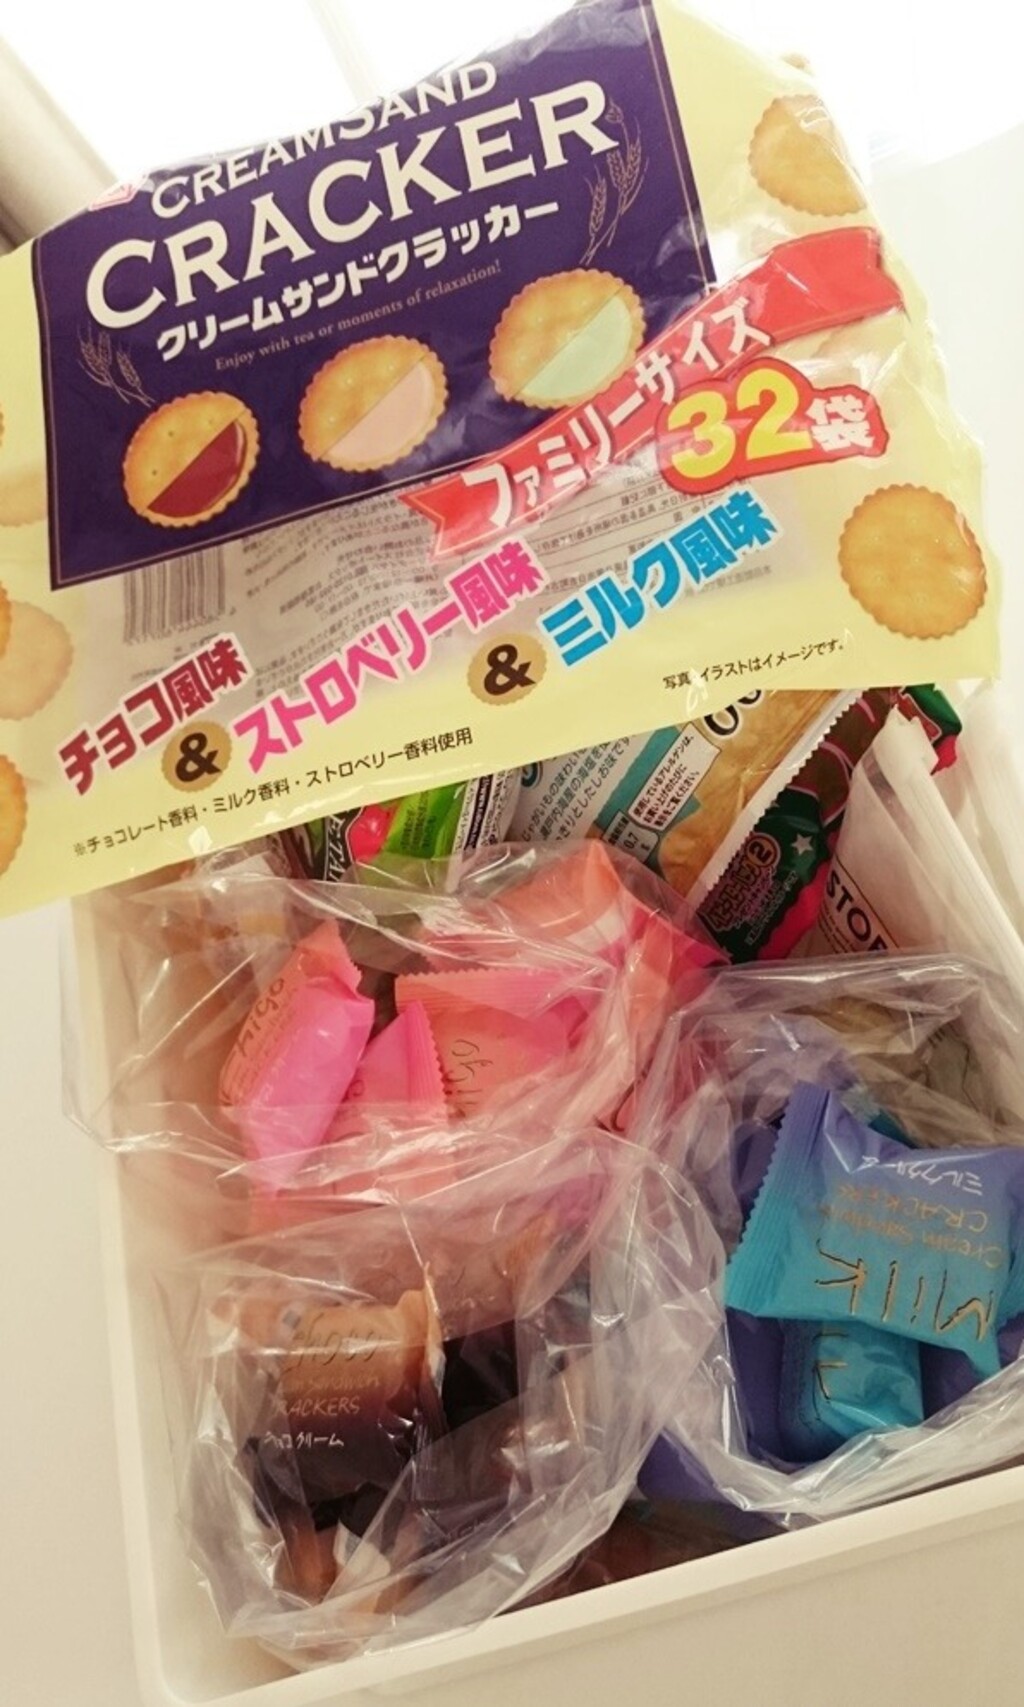 尾花美奈子が投稿したフォト「ファミリーパックのお菓子を買った時は大袋から出して収納してい…」 - 2020-06-04 13:06:44 |  LIMIA (リミア)